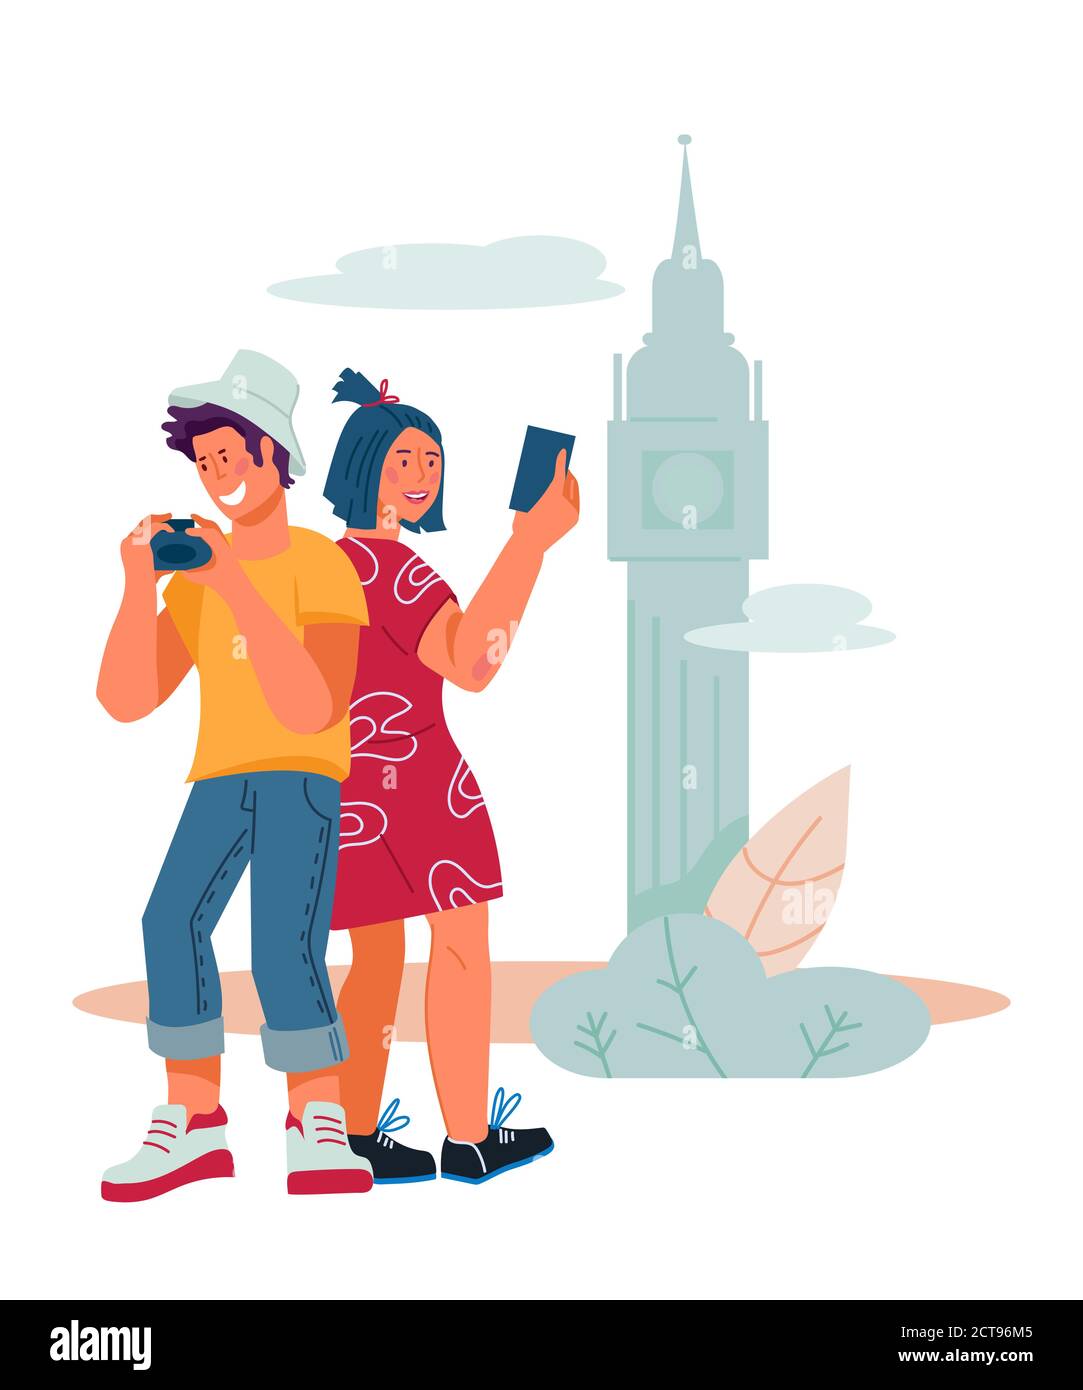 Travelers - Sightseeing und Selfie vor der Kulisse der touristischen Attraktionen. Stock Vektor